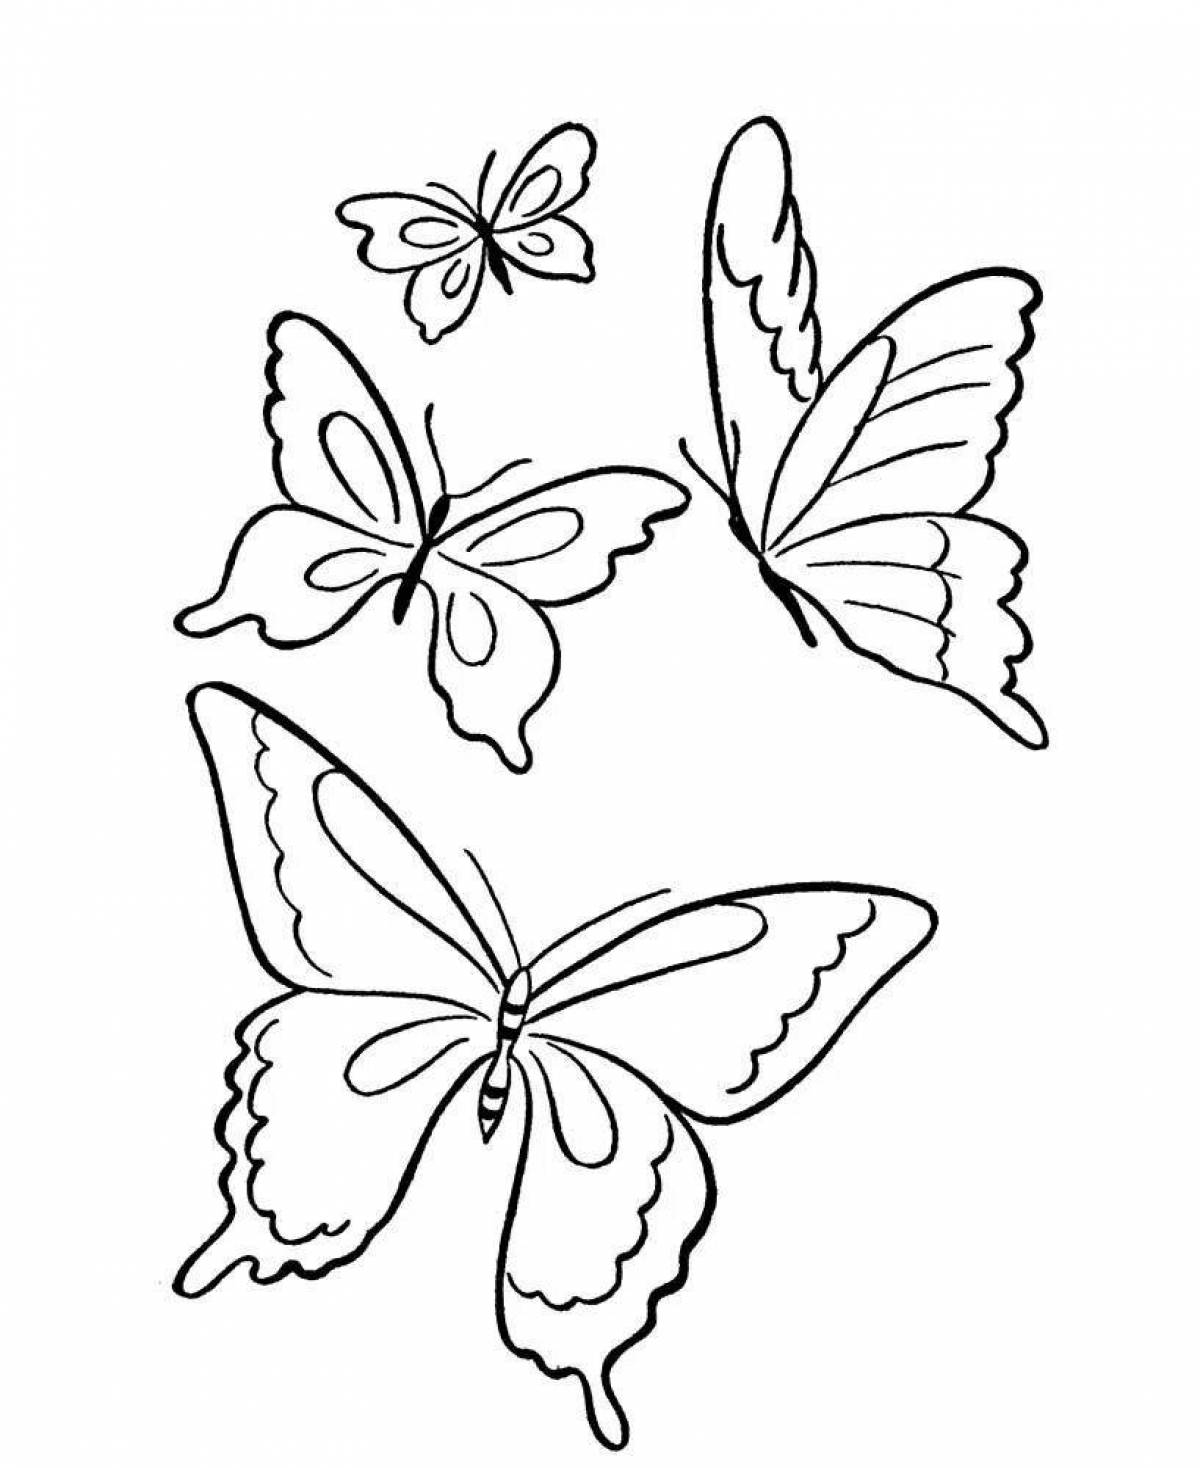 Трафаретная раскраска радостная бабочка